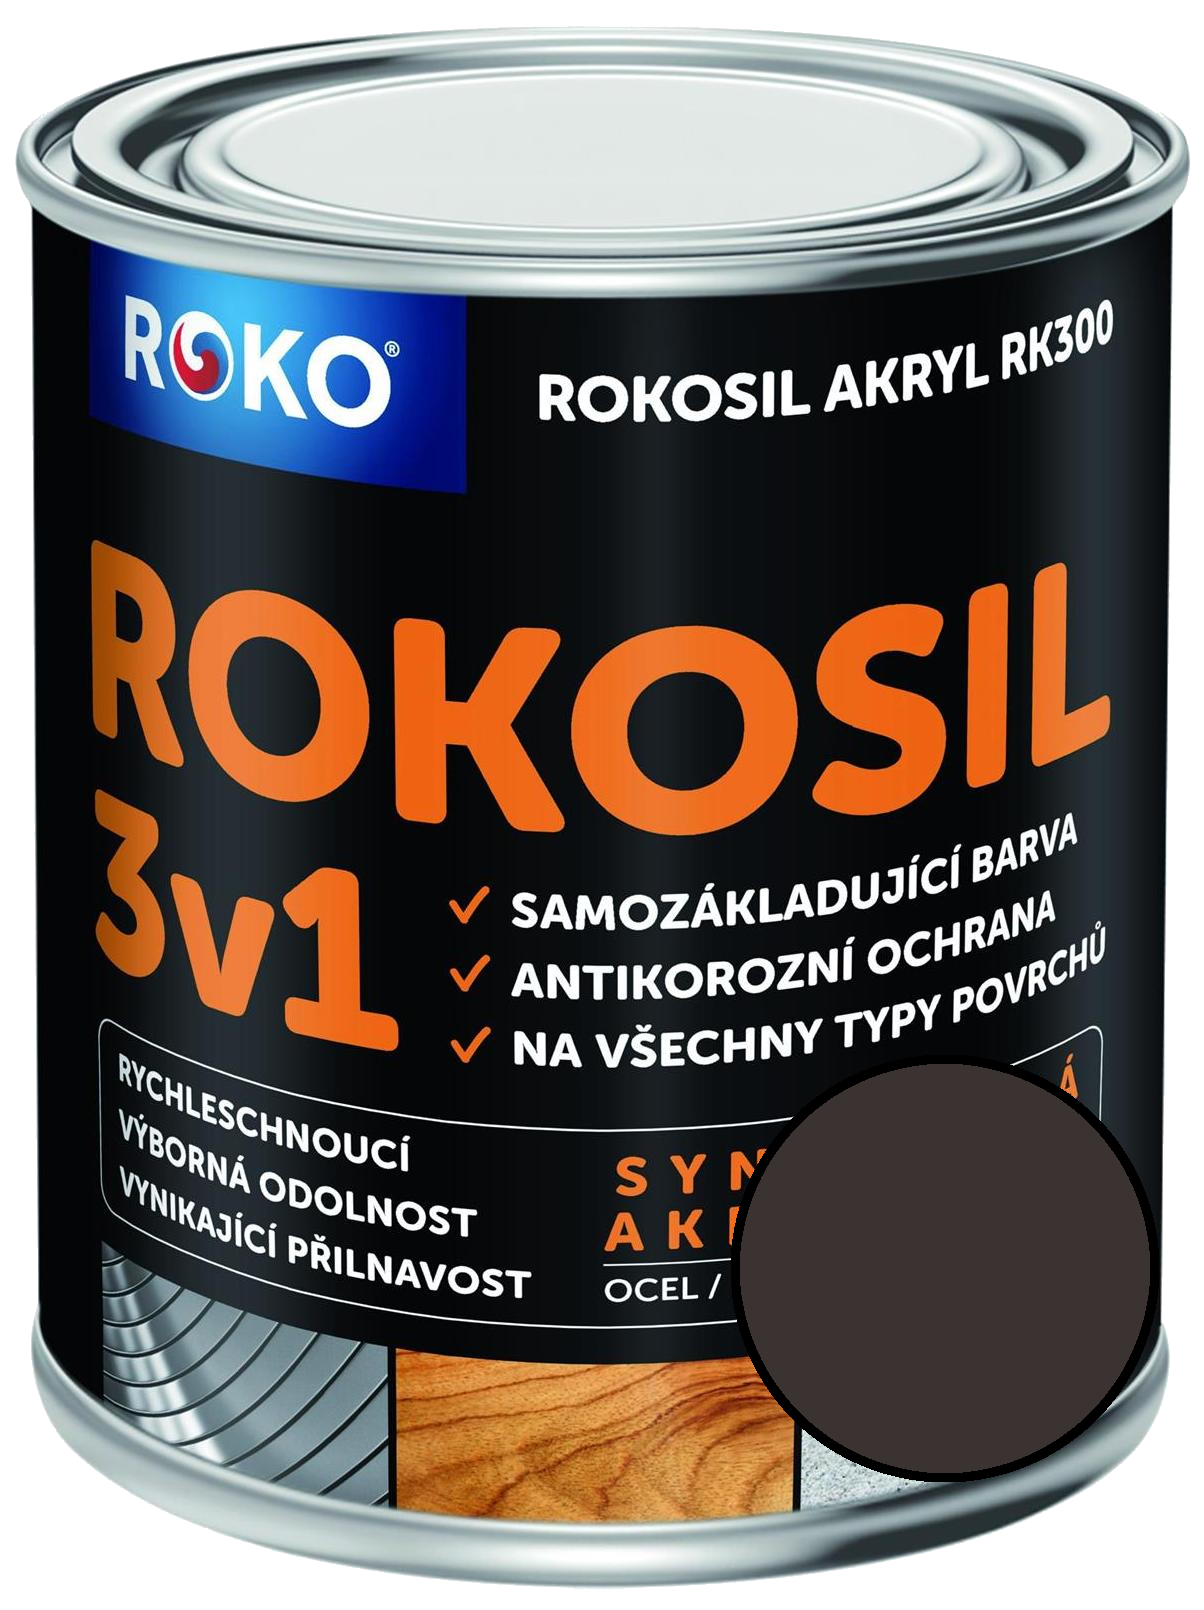 Barva samozákladující Rokosil akryl 3v1 RK 300 2880 hnědá tmavá, 3 l